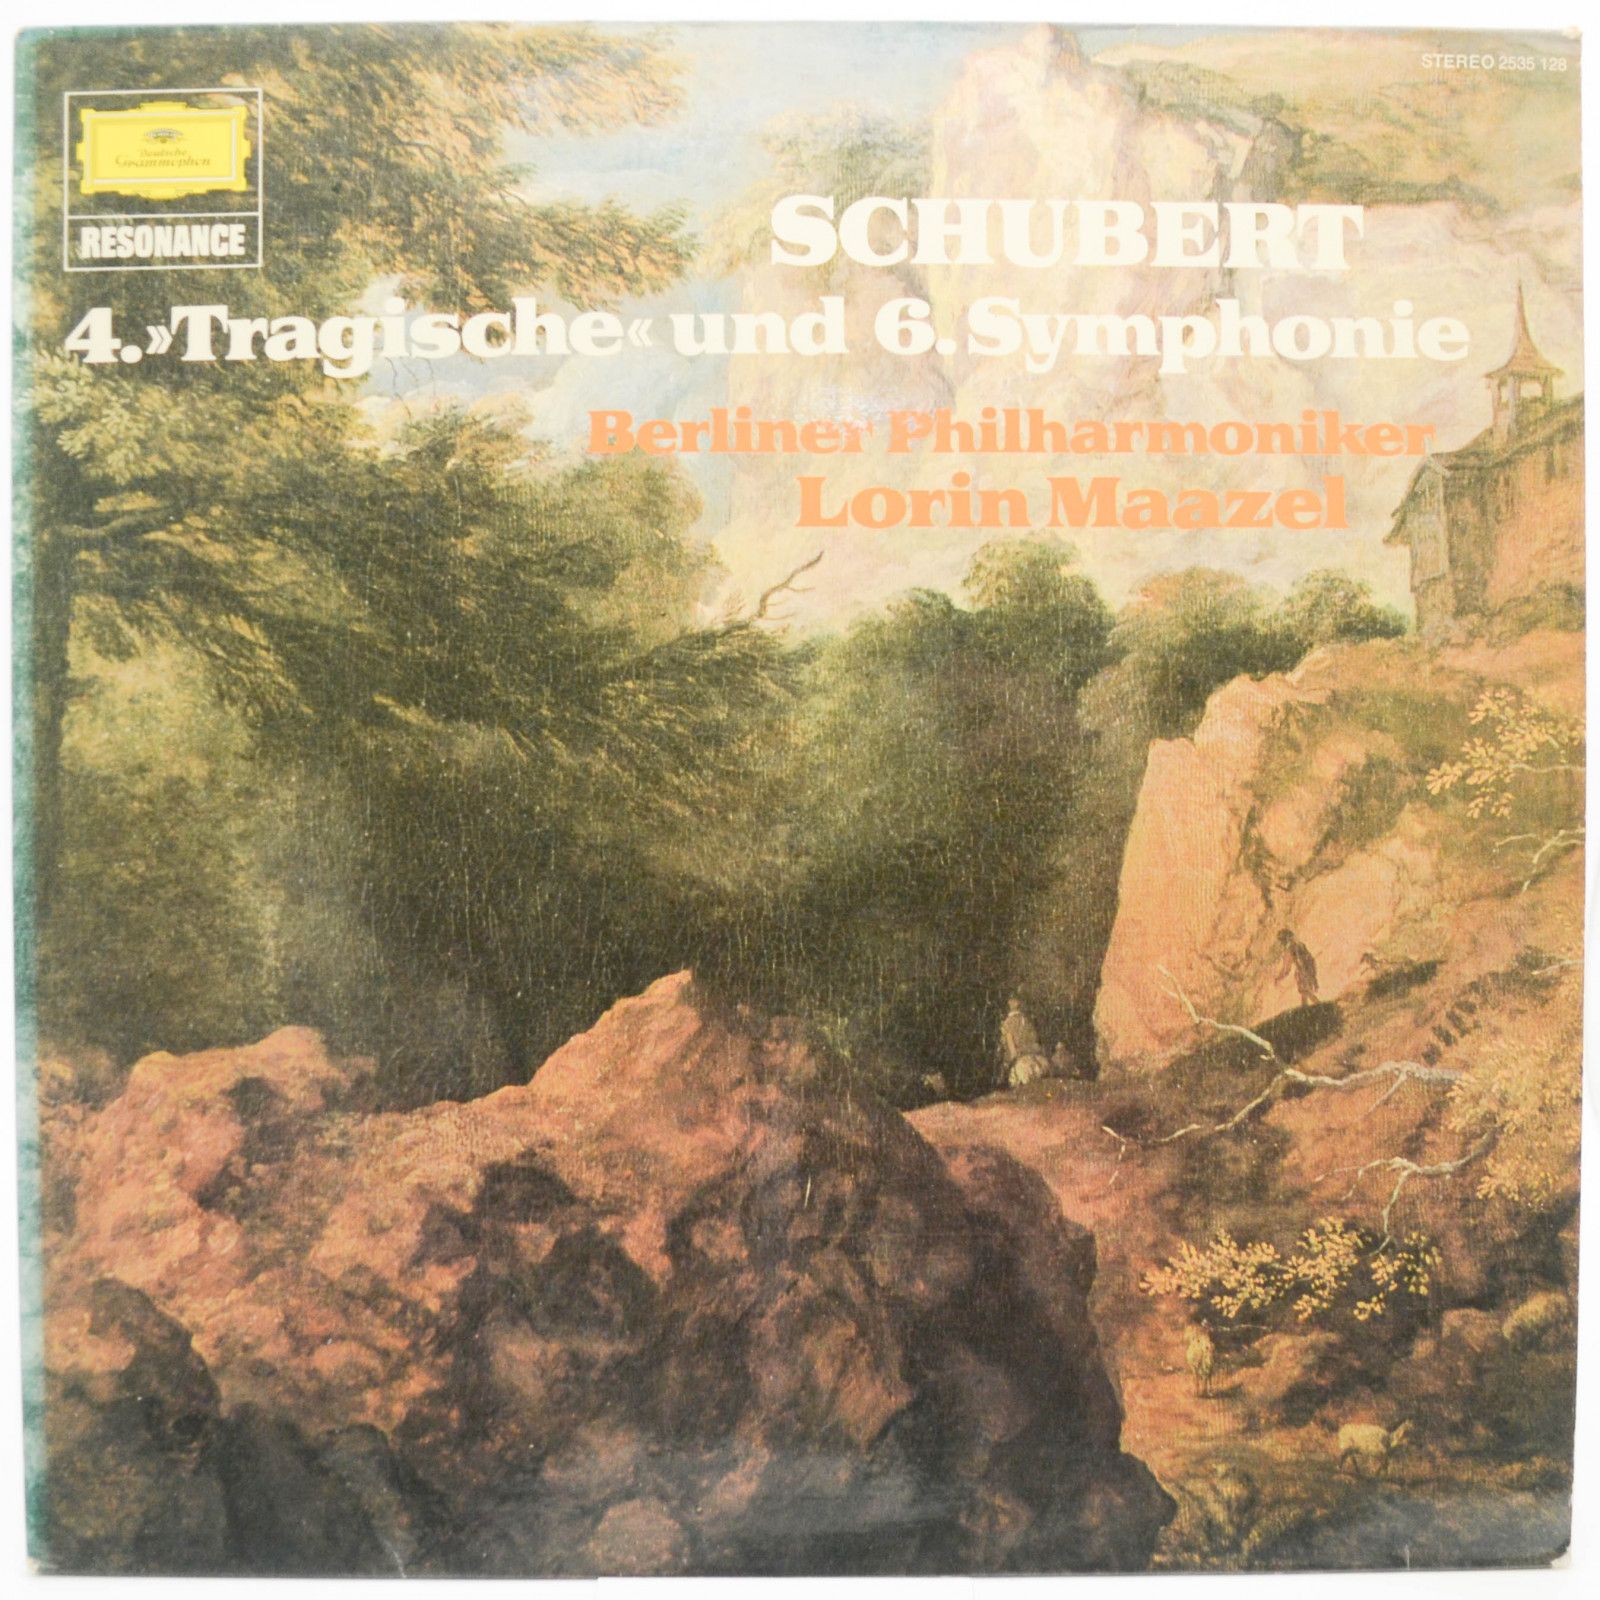 Franz Schubert – Lorin Maazel, Berliner Philharmoniker — 4. »Tragische« Und 6. Symphonie, 1971